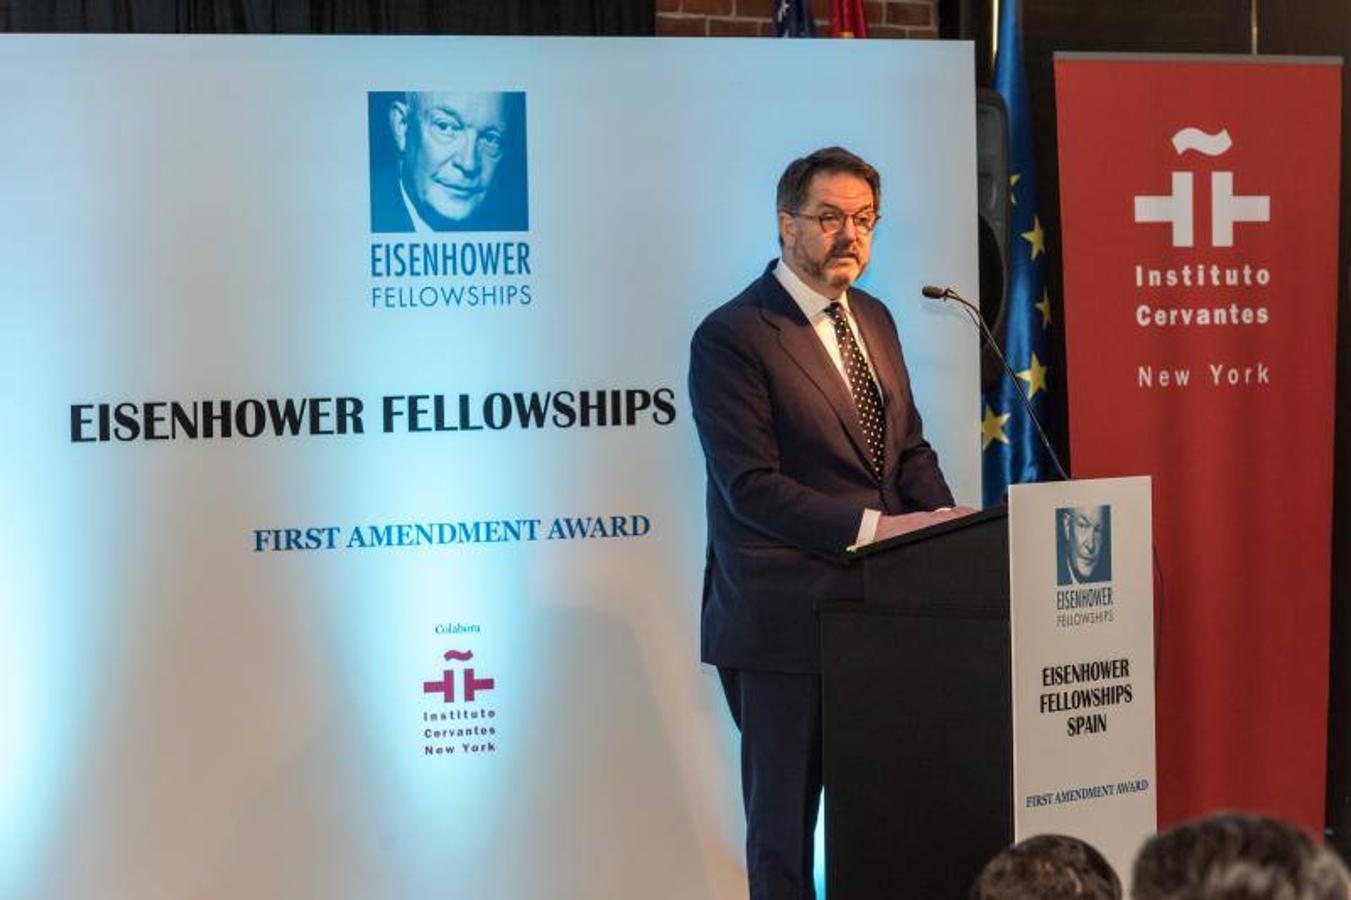 El director de ABC Bieito Rubido agradece el premio "First Amendment Award" otorgado por Eisenhower Fellows España durante una ceremonia en el Instituto Cervantes de Nueva York